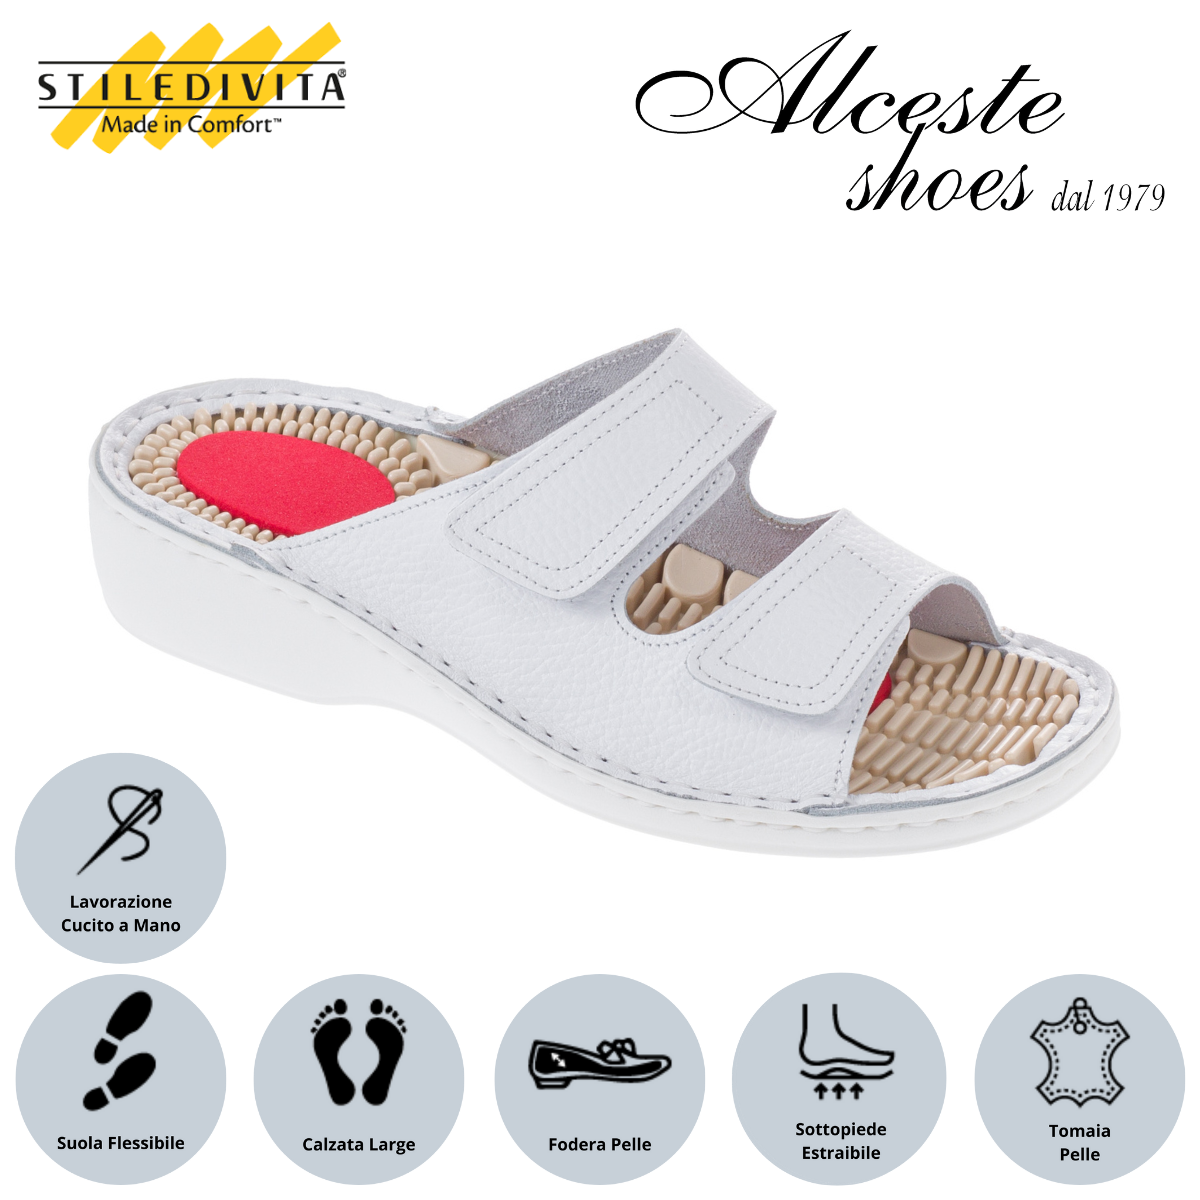 Ciabatta con 2 Strappi e Sottopiede Estraibile "Stiledivita" Art. 5187 Pelle Bianco Alceste Shoes 25